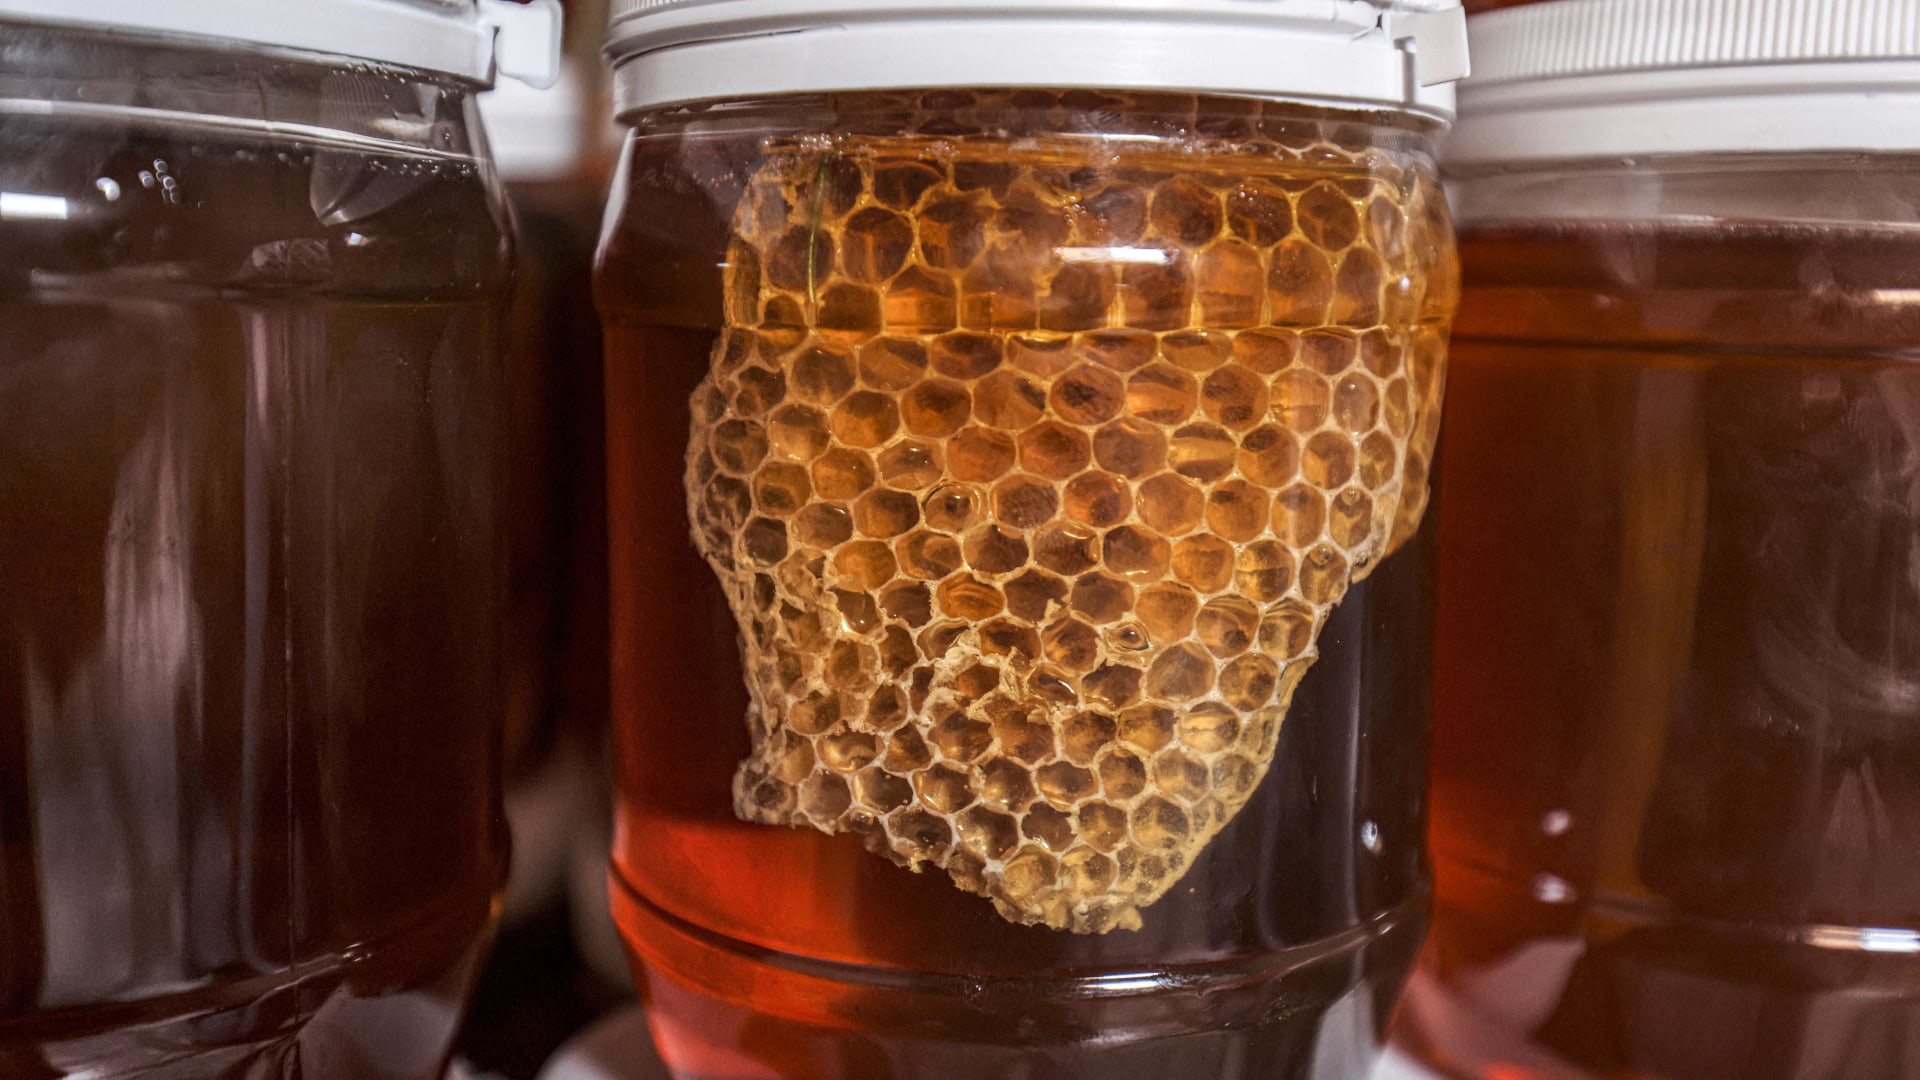 ليست للتحلية فقط.. إليك فوائد قد لا تعرفها عن العسل